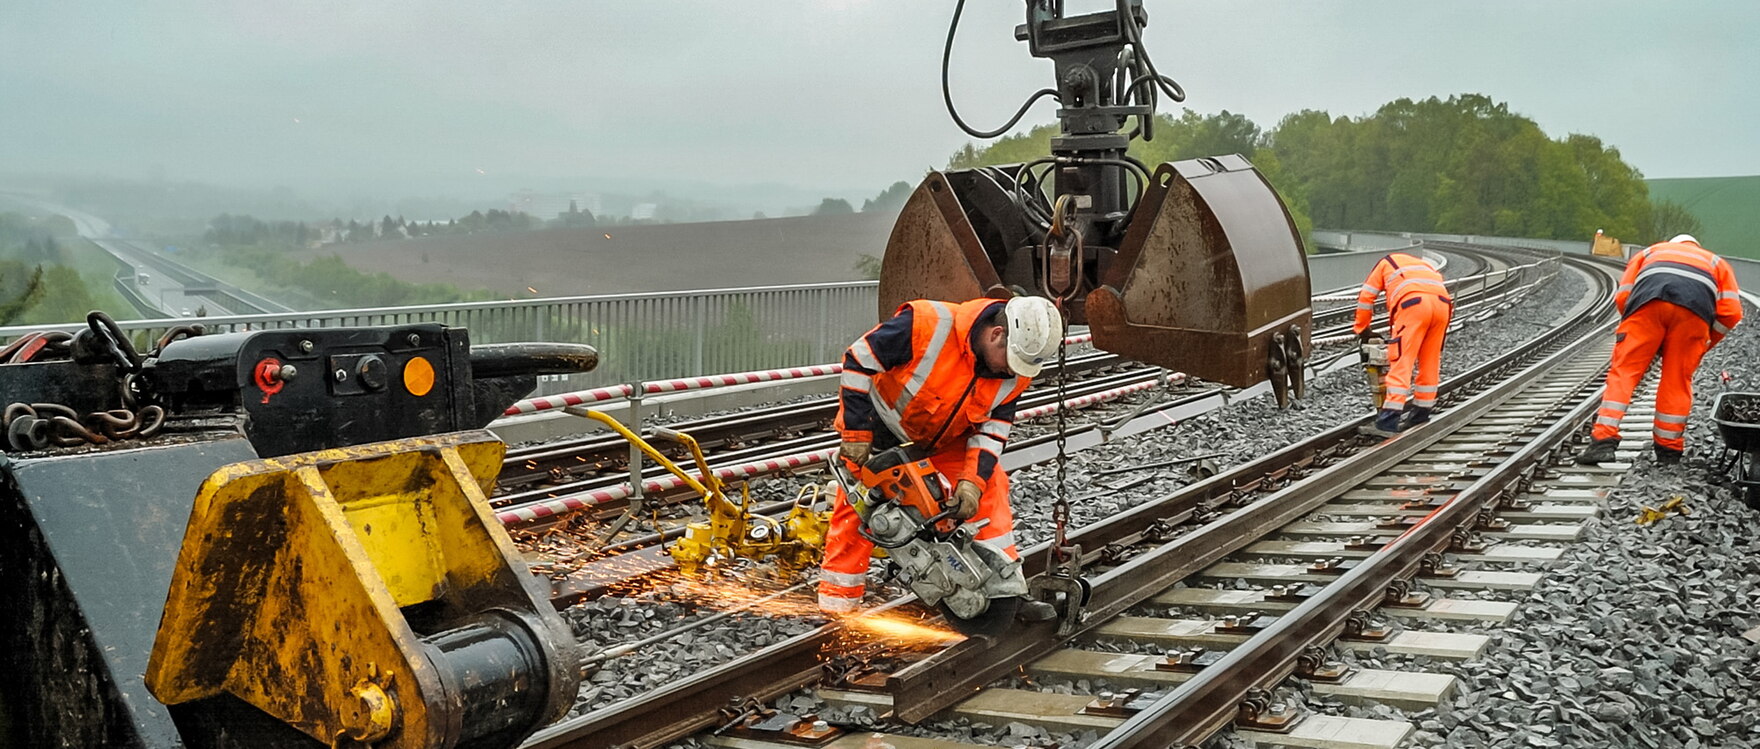 Drei Bauarbeiter bei Arbeiten auf einer Bahnstrecke.